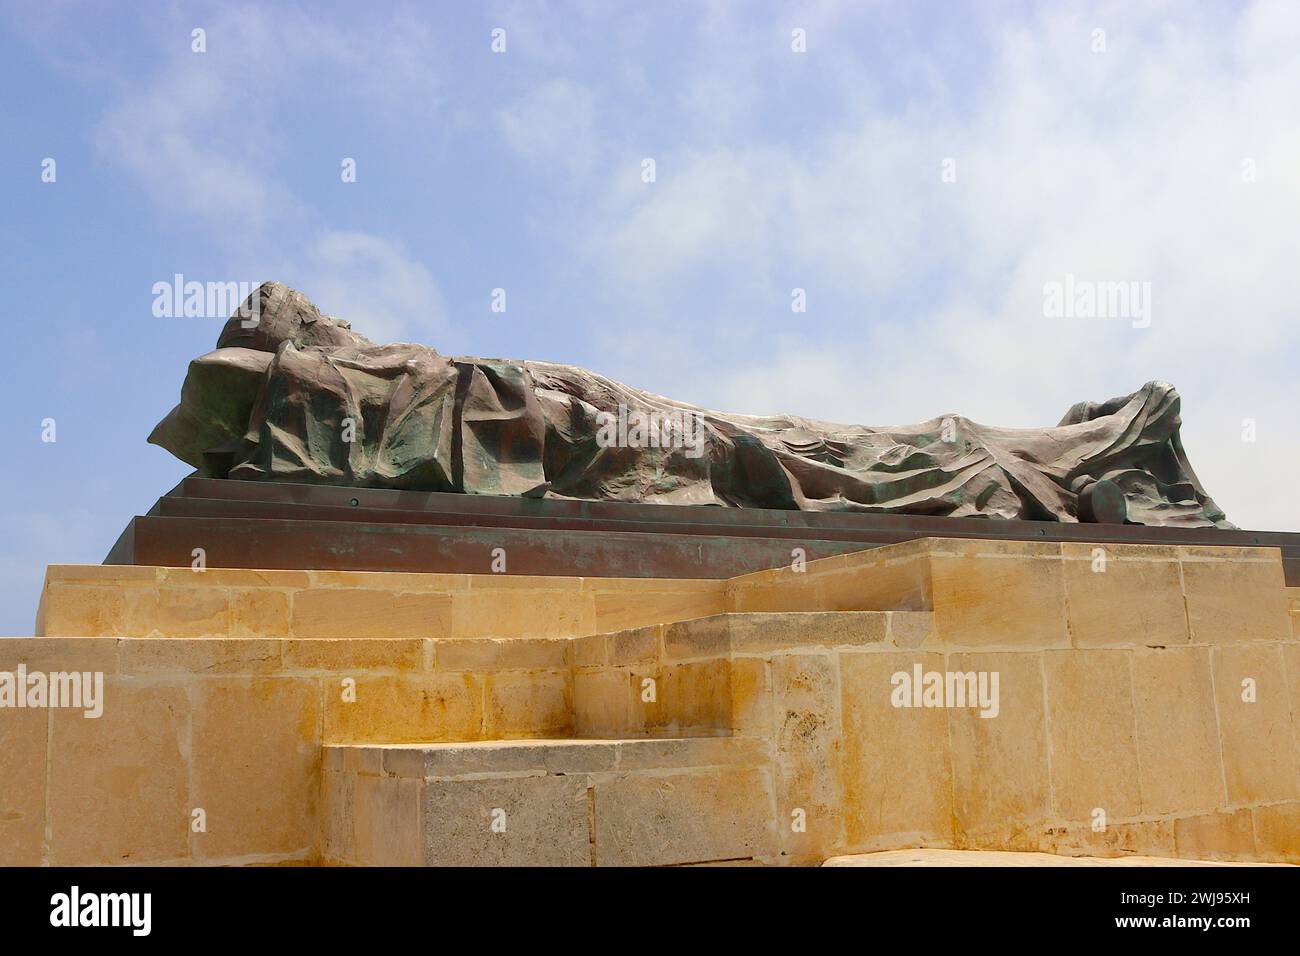 Das Grabtuch wurde über eine liegende Figur gelegt, die Michael Sandle in Bronze geschnitzt hat und an die Belagerung Maltas mit Blick auf den Großen Hafen von Valletta erinnert. Stockfoto